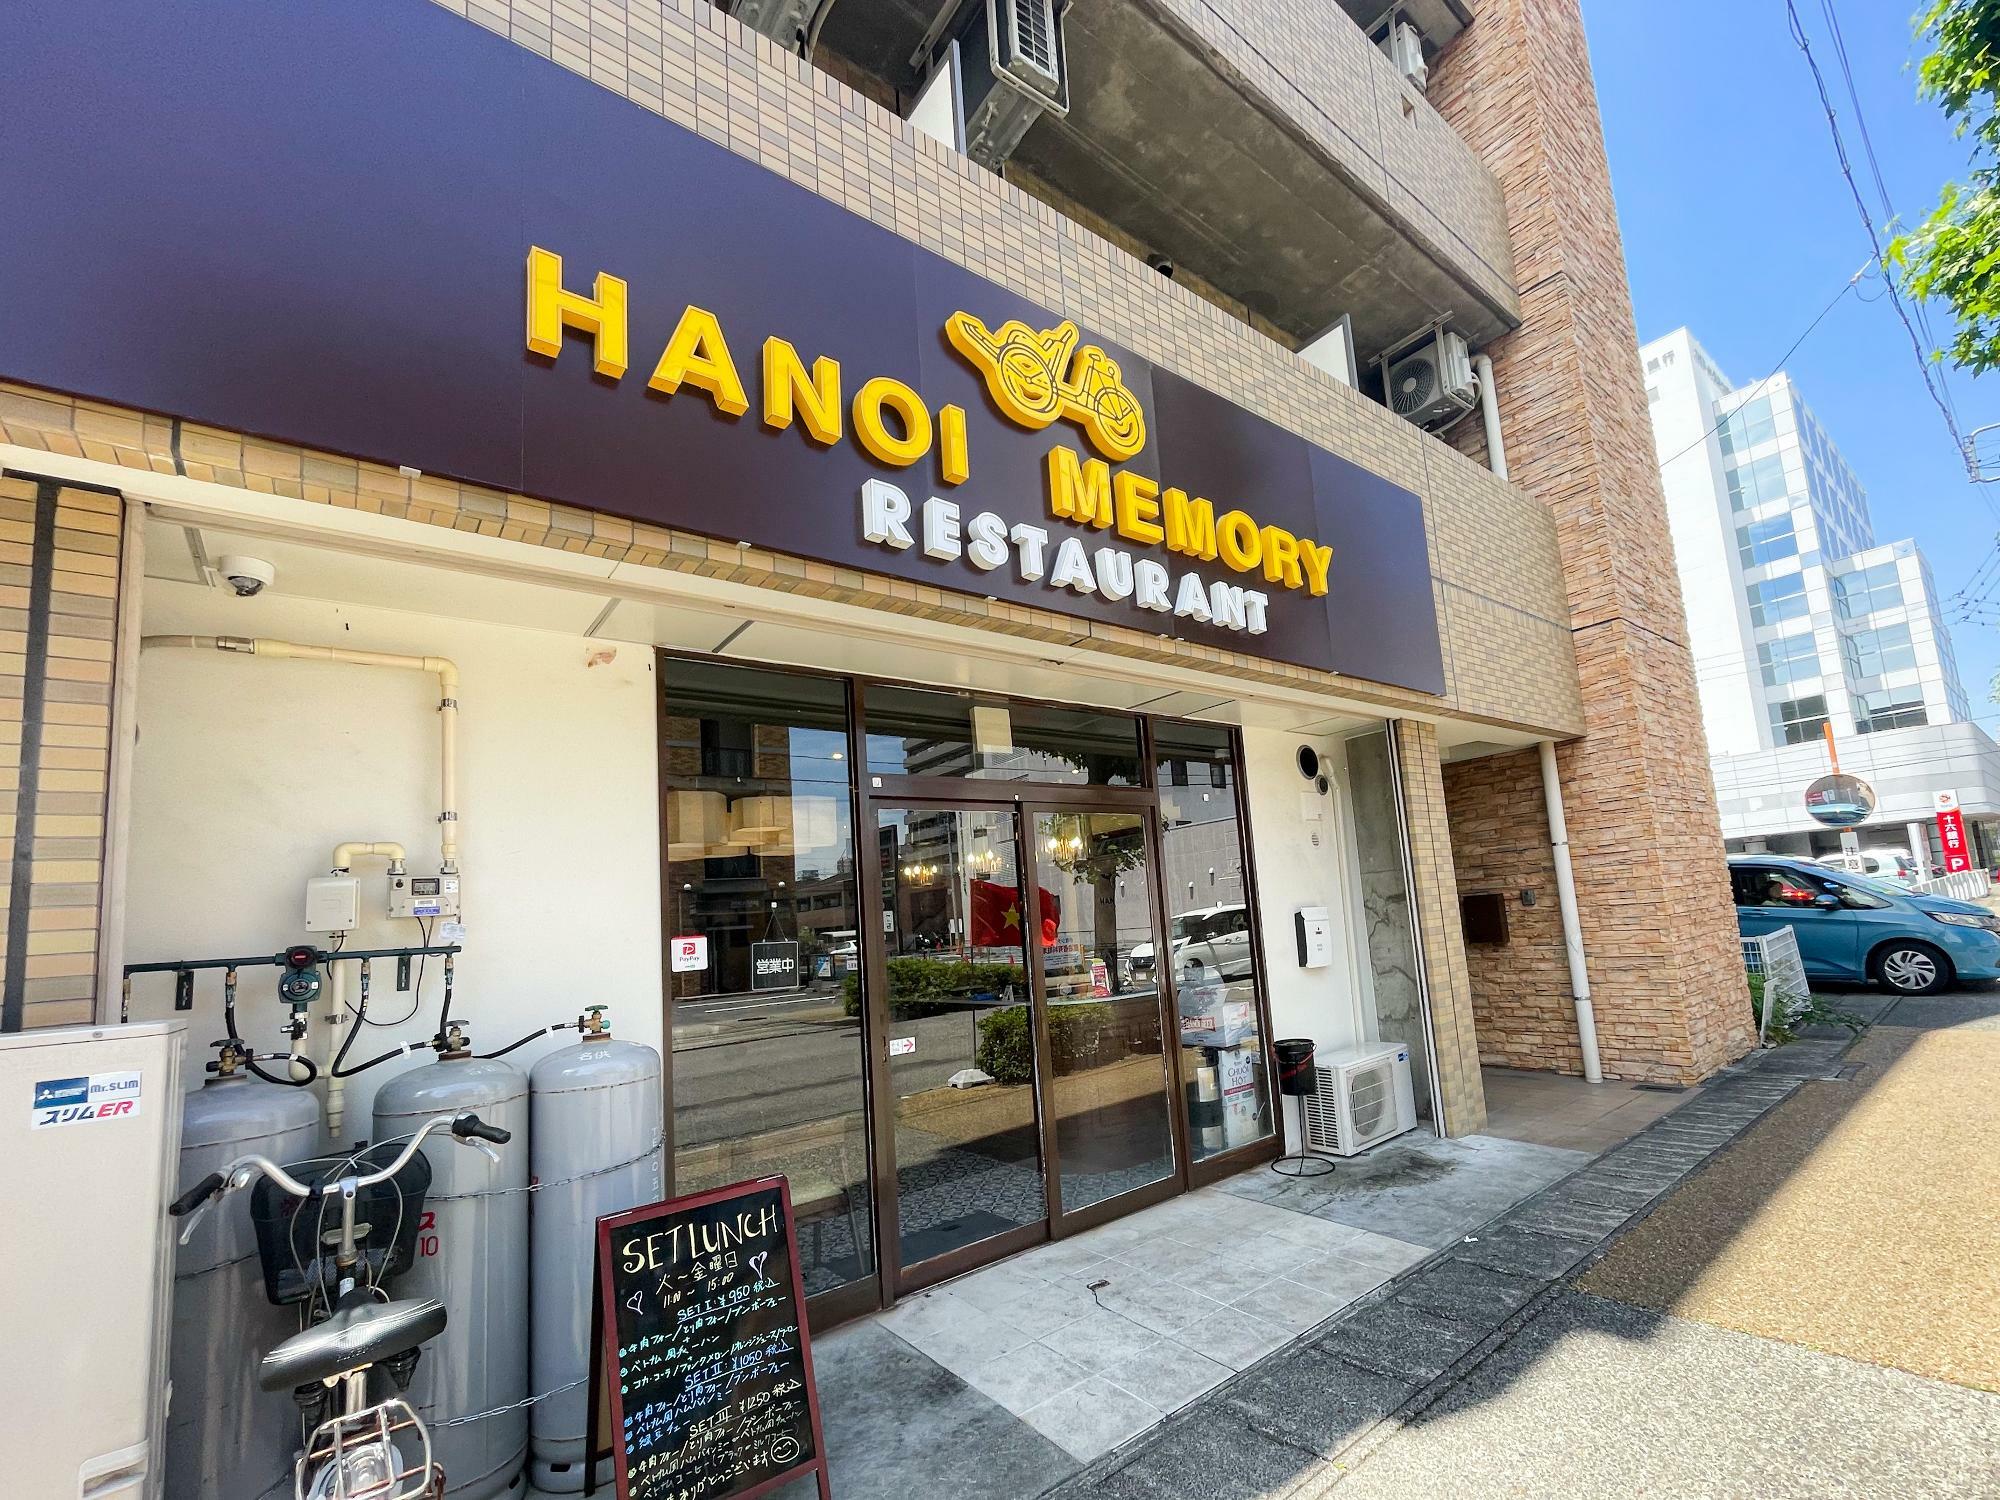 HANOI Memory Restaurant (ハノイメモリーレストラン)